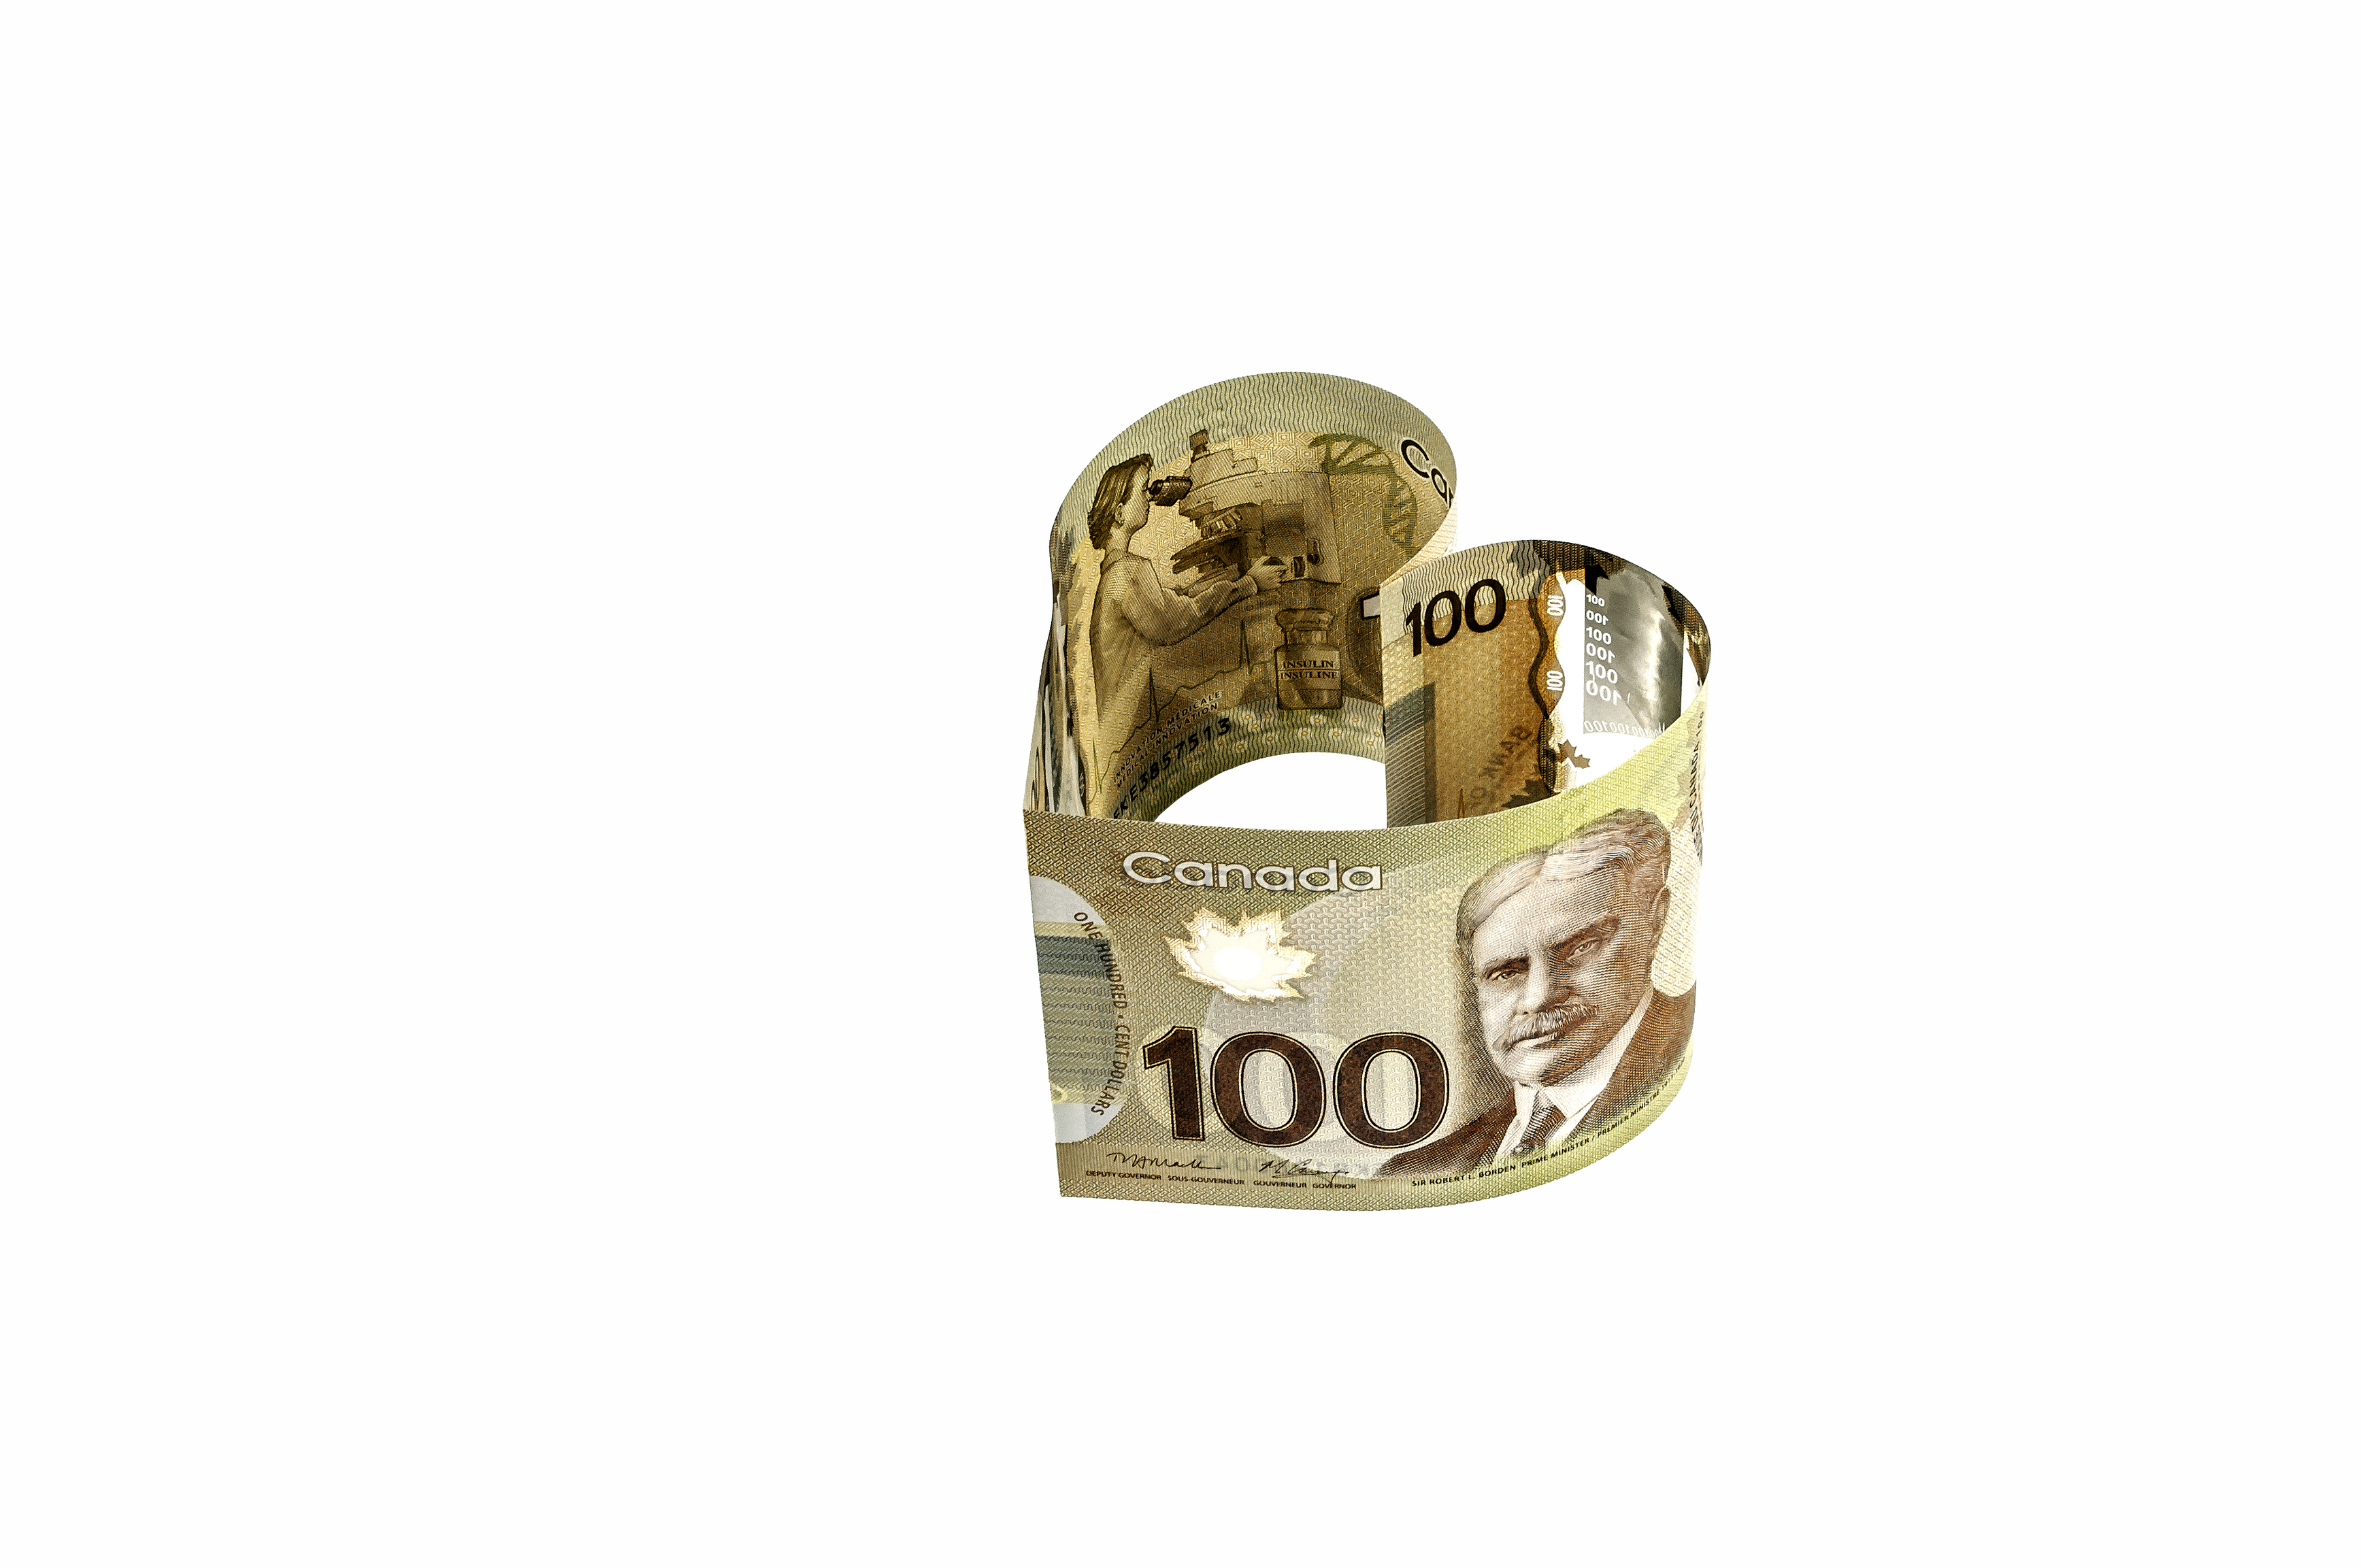 Billets canadiens de cent dollars recourbés en forme de cœur.